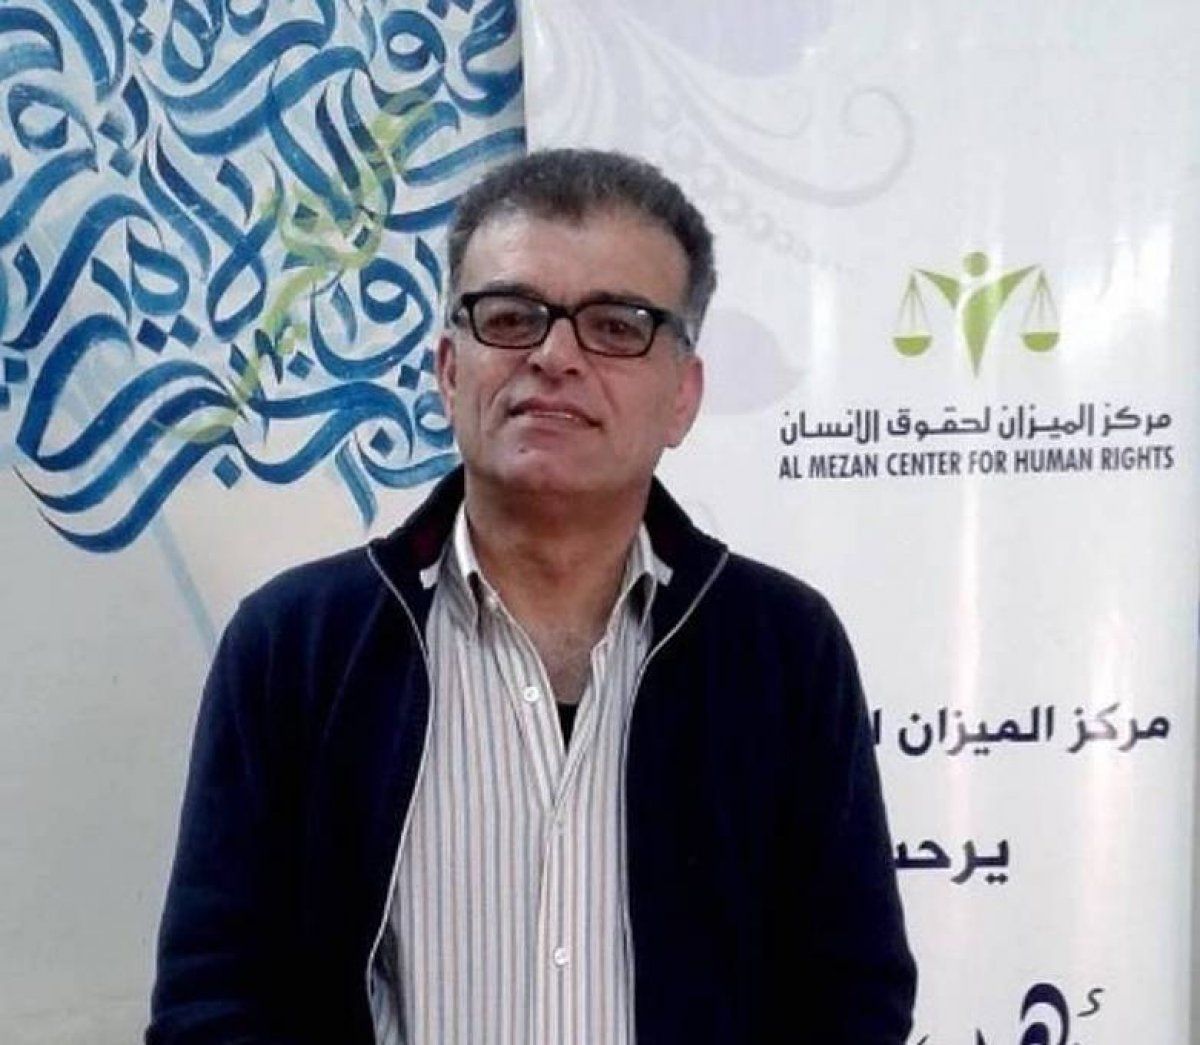 Samir Zaqout, Al Mezaneko zuzendaria. BERRIA